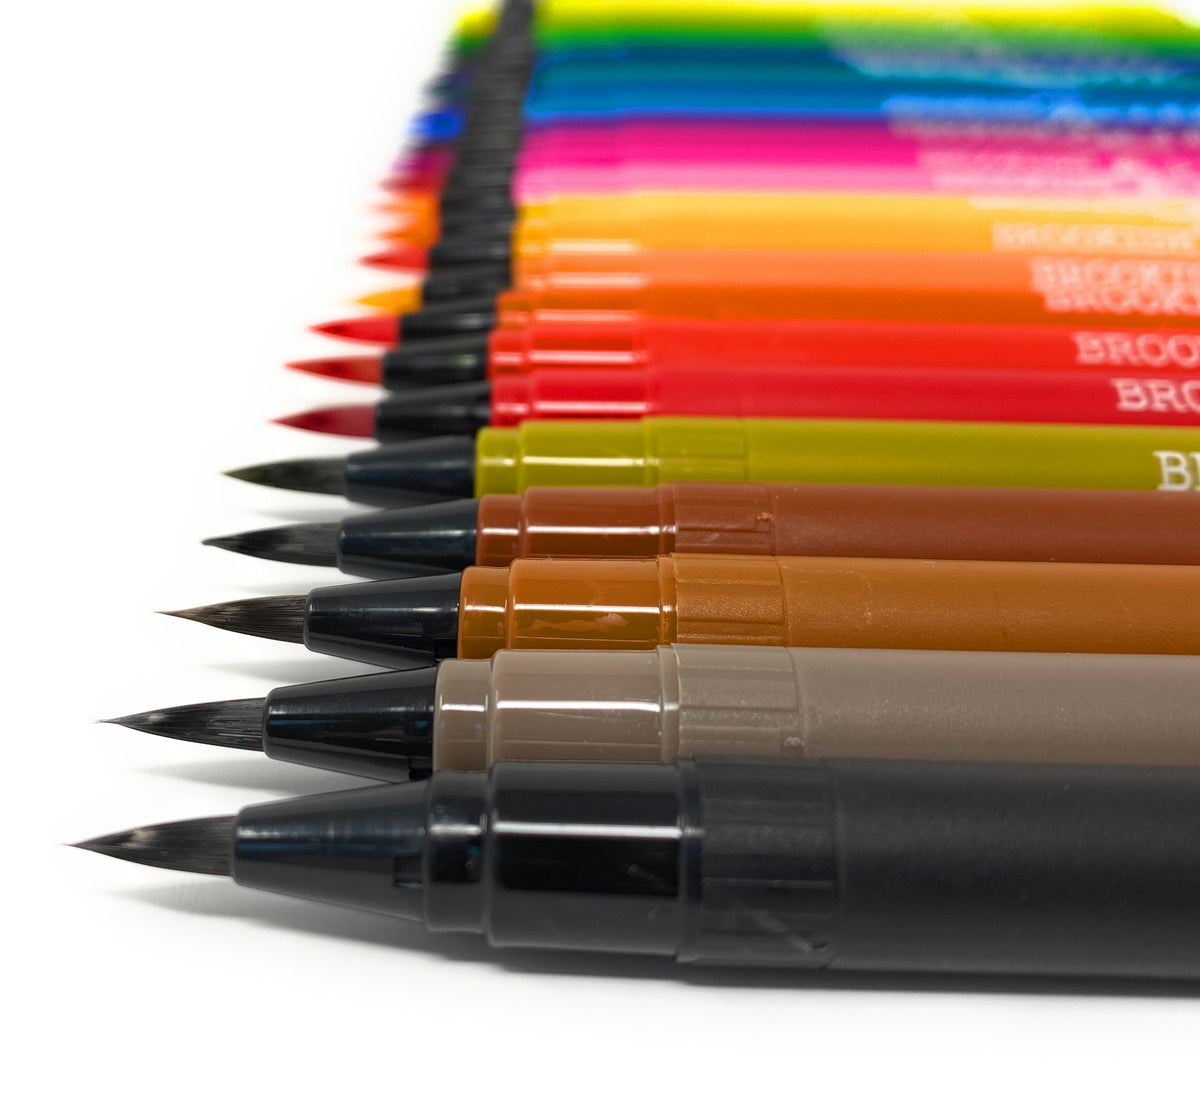 Brookish & Lanky Watercolor Brush Pens